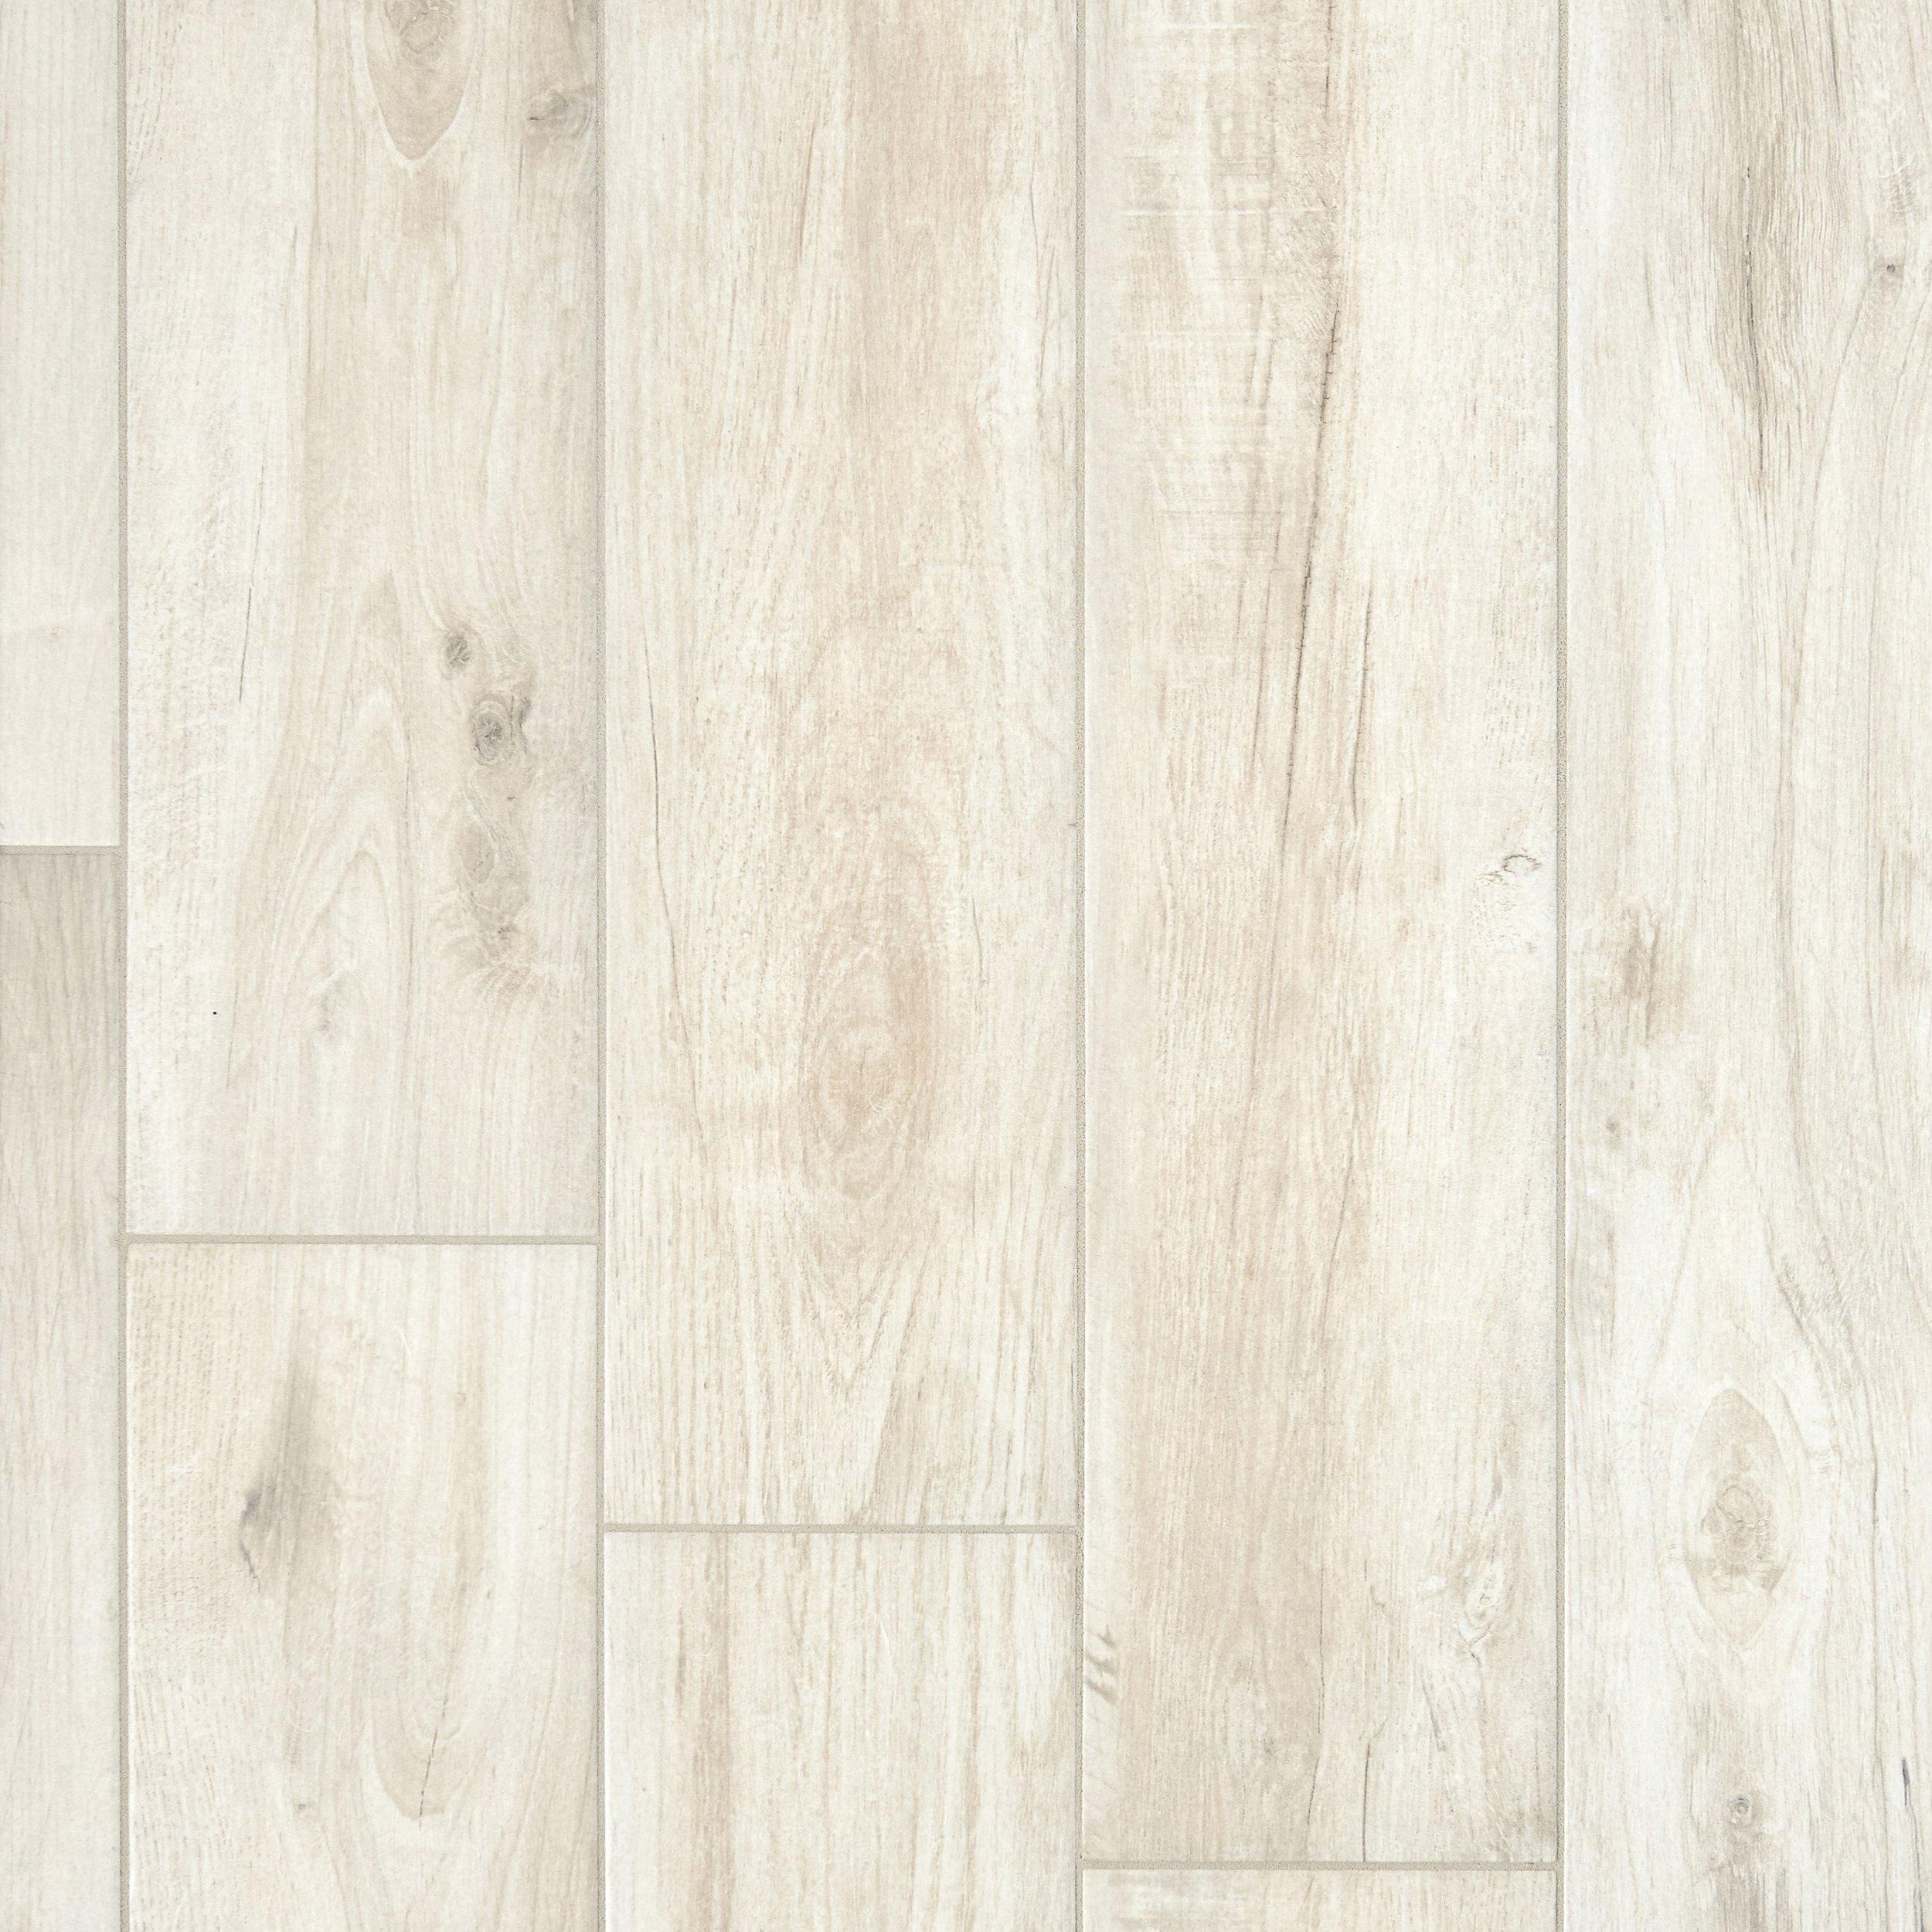 Savannah White Wood Plank Porcelain, White Plank Floor Tiles